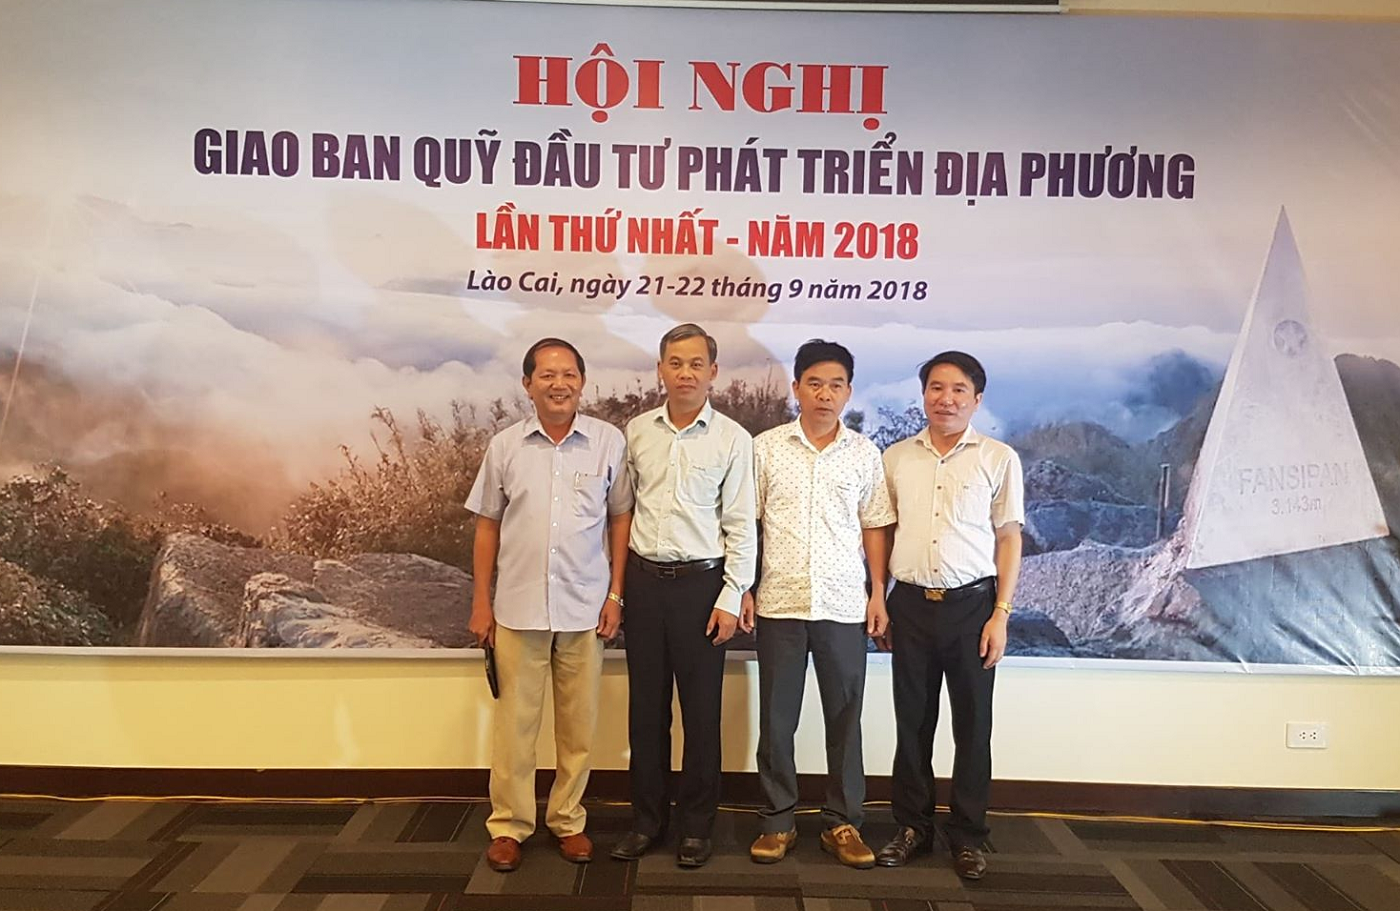 Quỹ ĐTPT Ninh Bình tham dự Hội nghị giao ban các Quỹ ĐTPT địa phương ngày 21-22/09/2018 tại Lào Cai